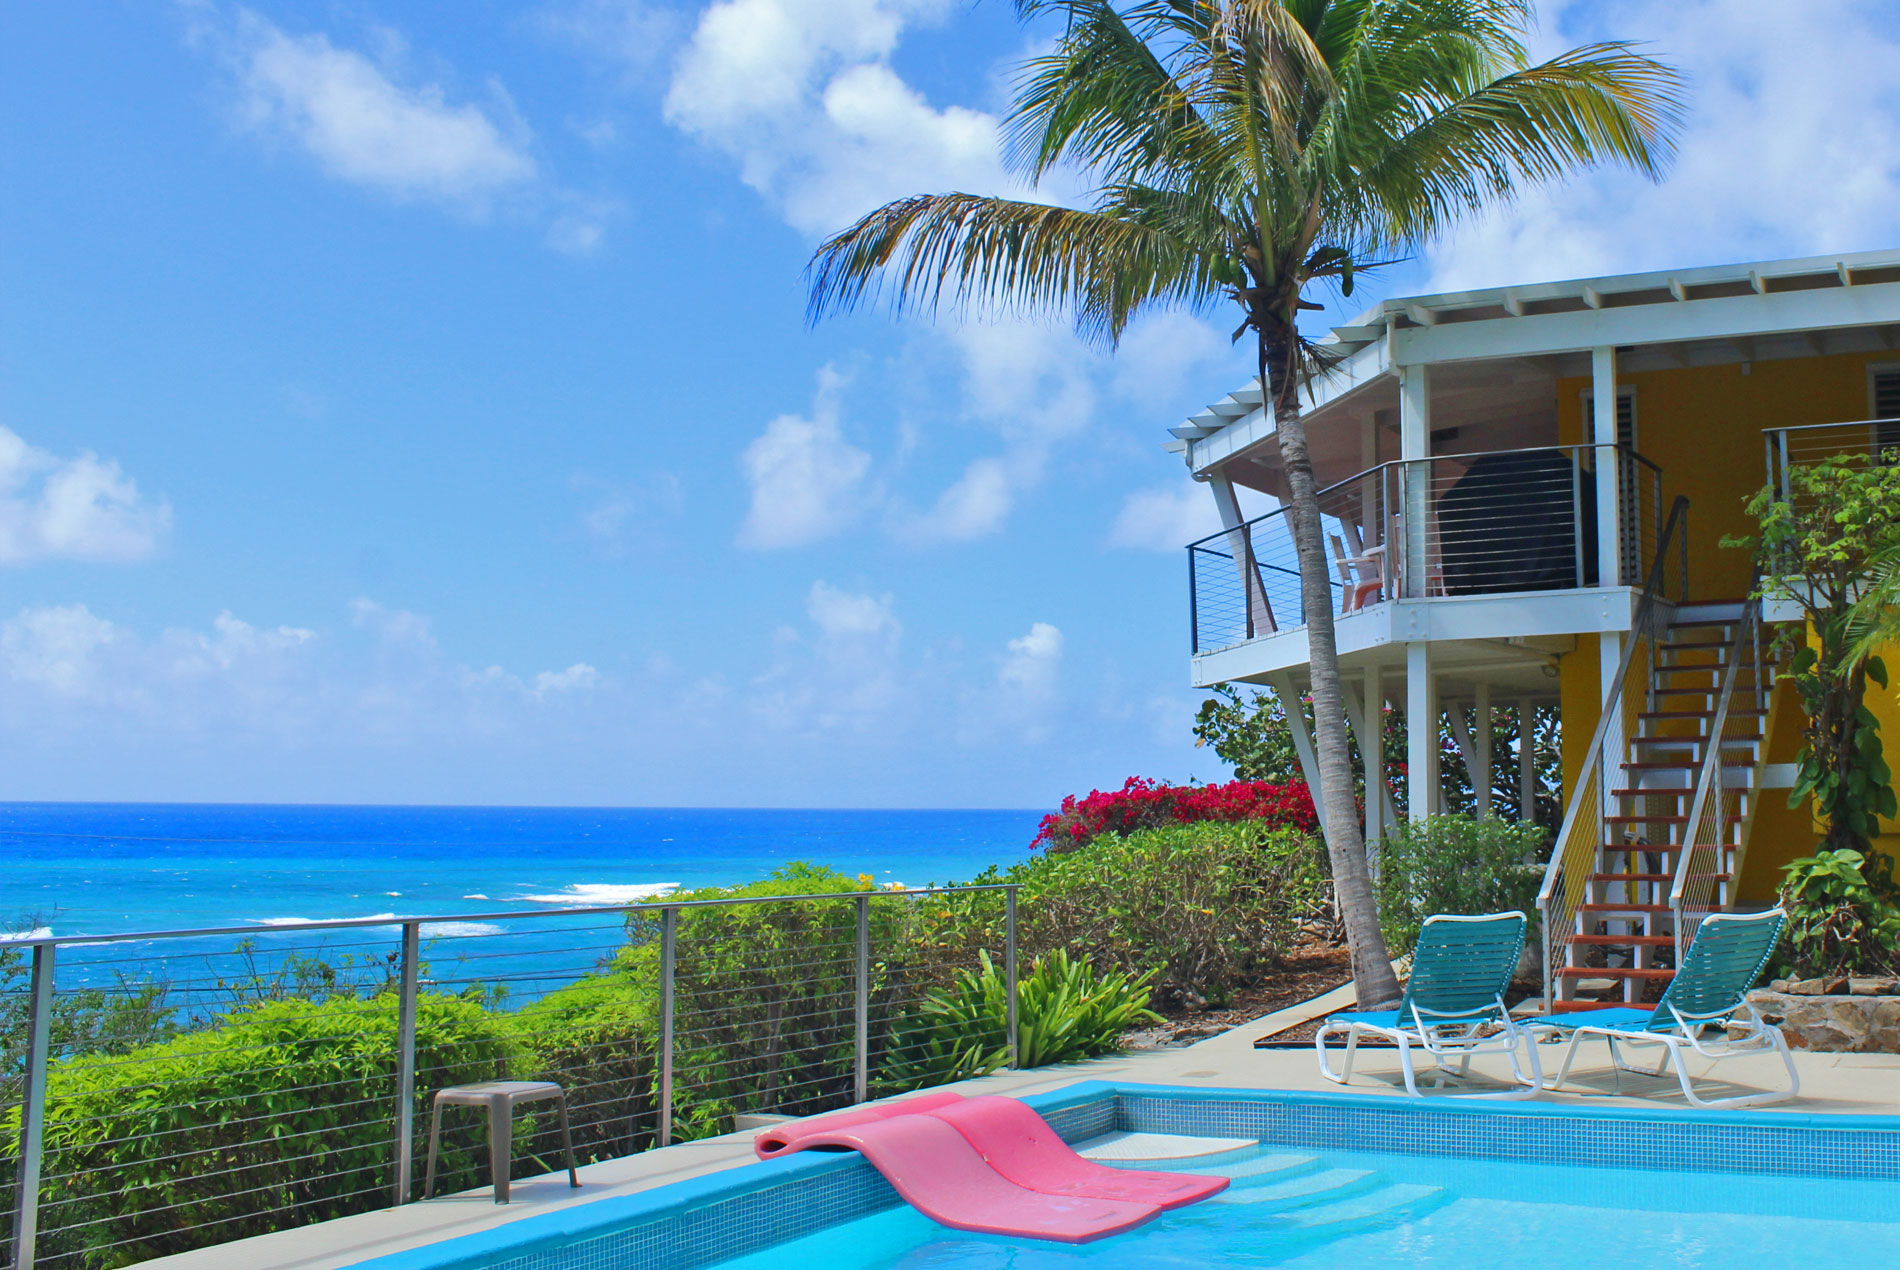 Paradise Found Villa, St. Croix